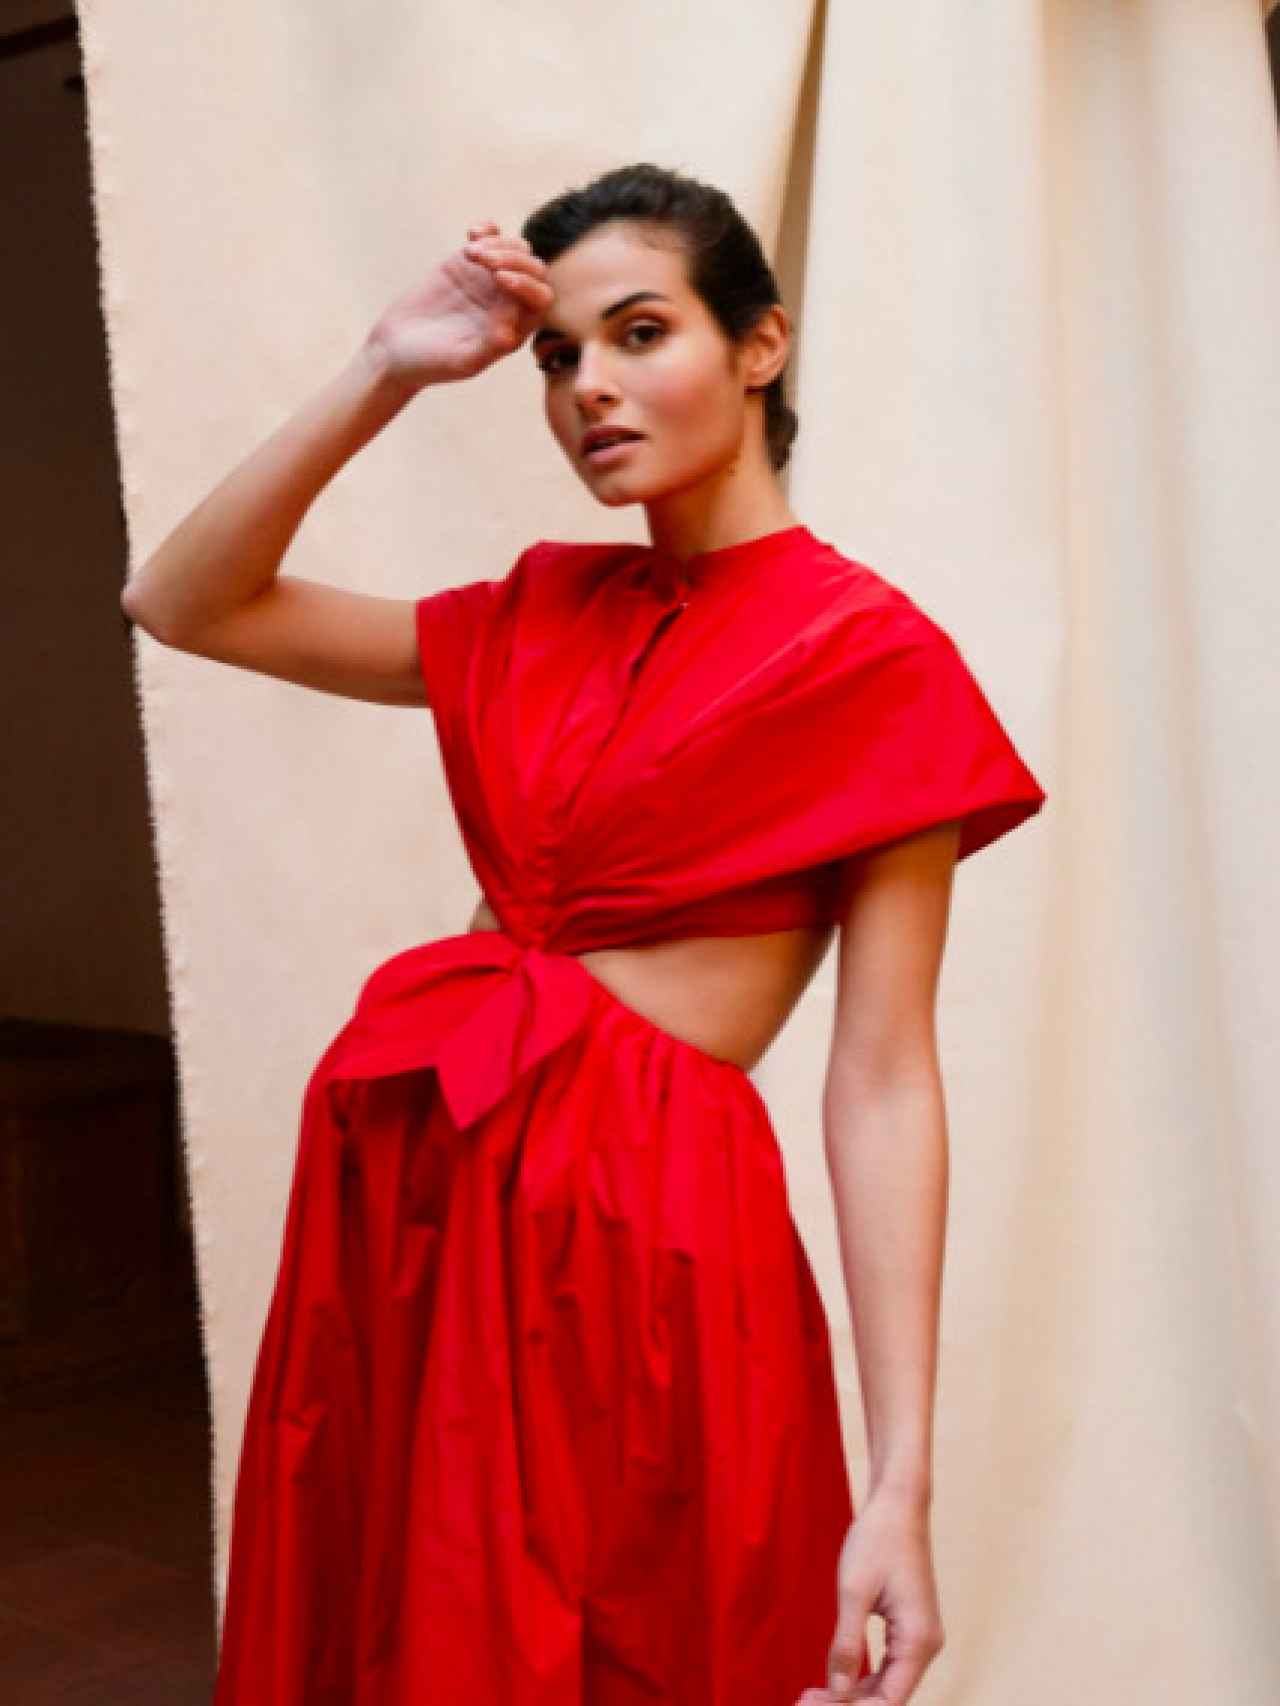 Vestido rojo de Candelas y Felipa.